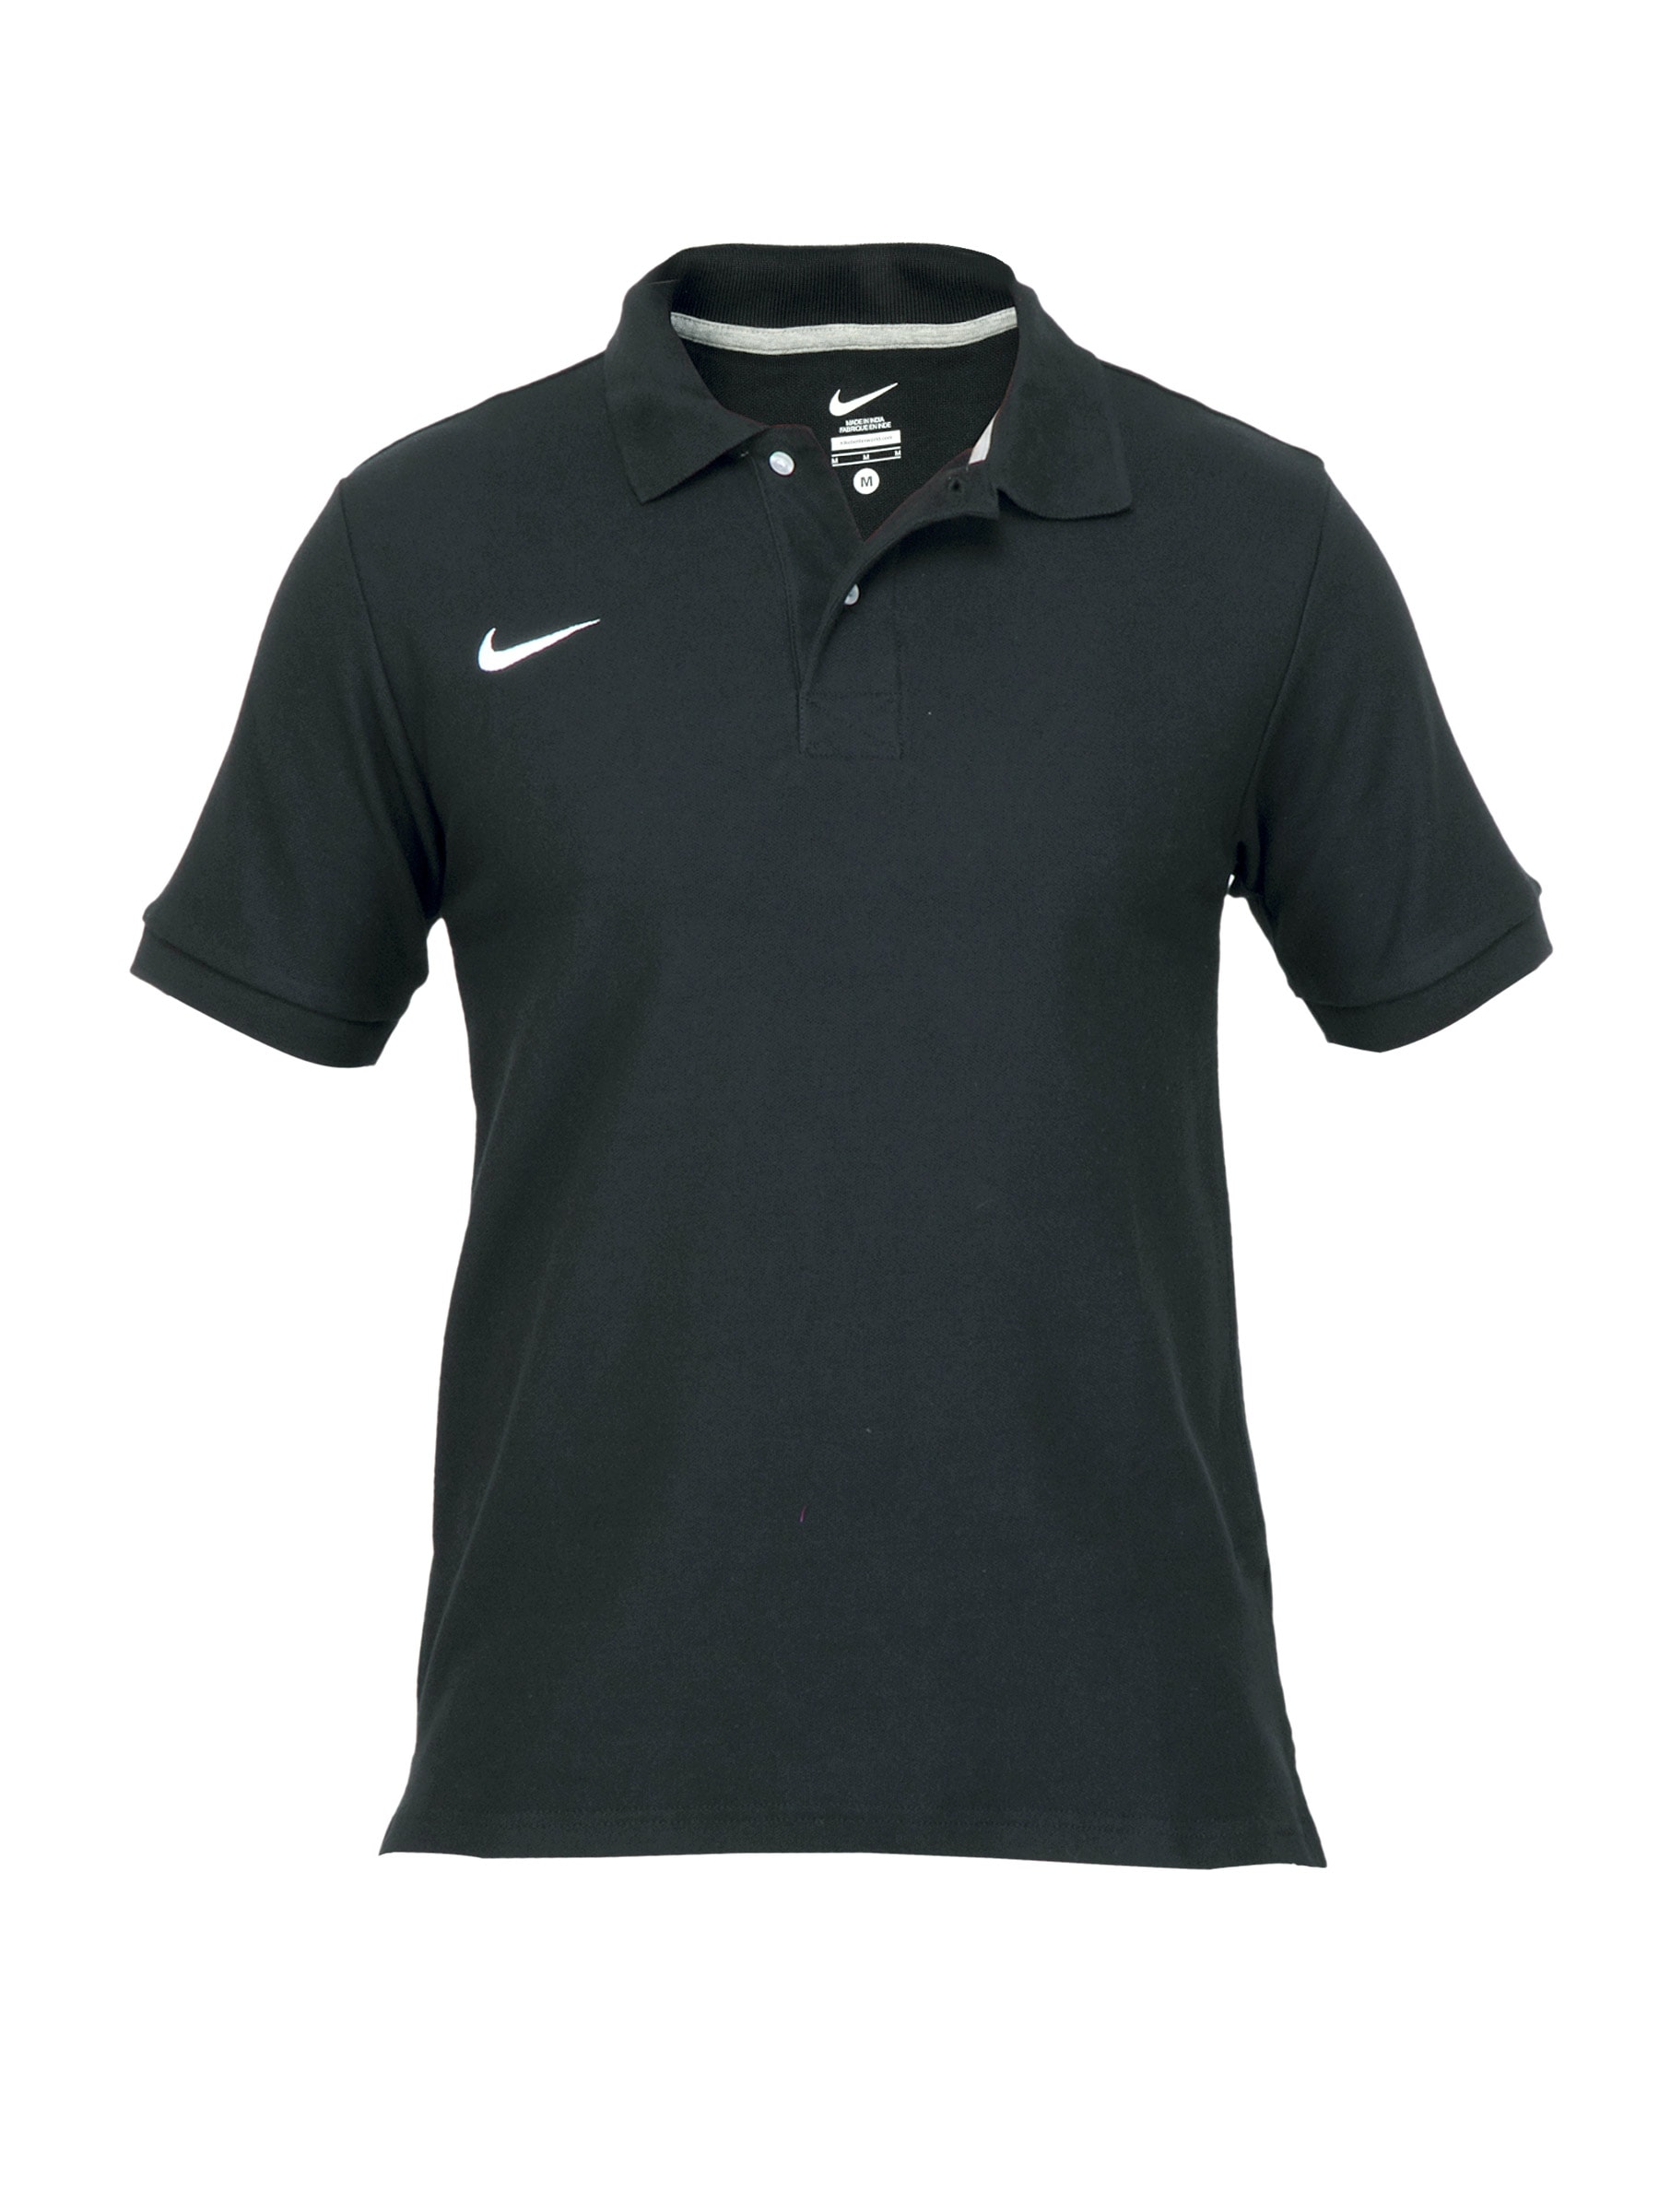 Nike Mens Polo Black T-shirt